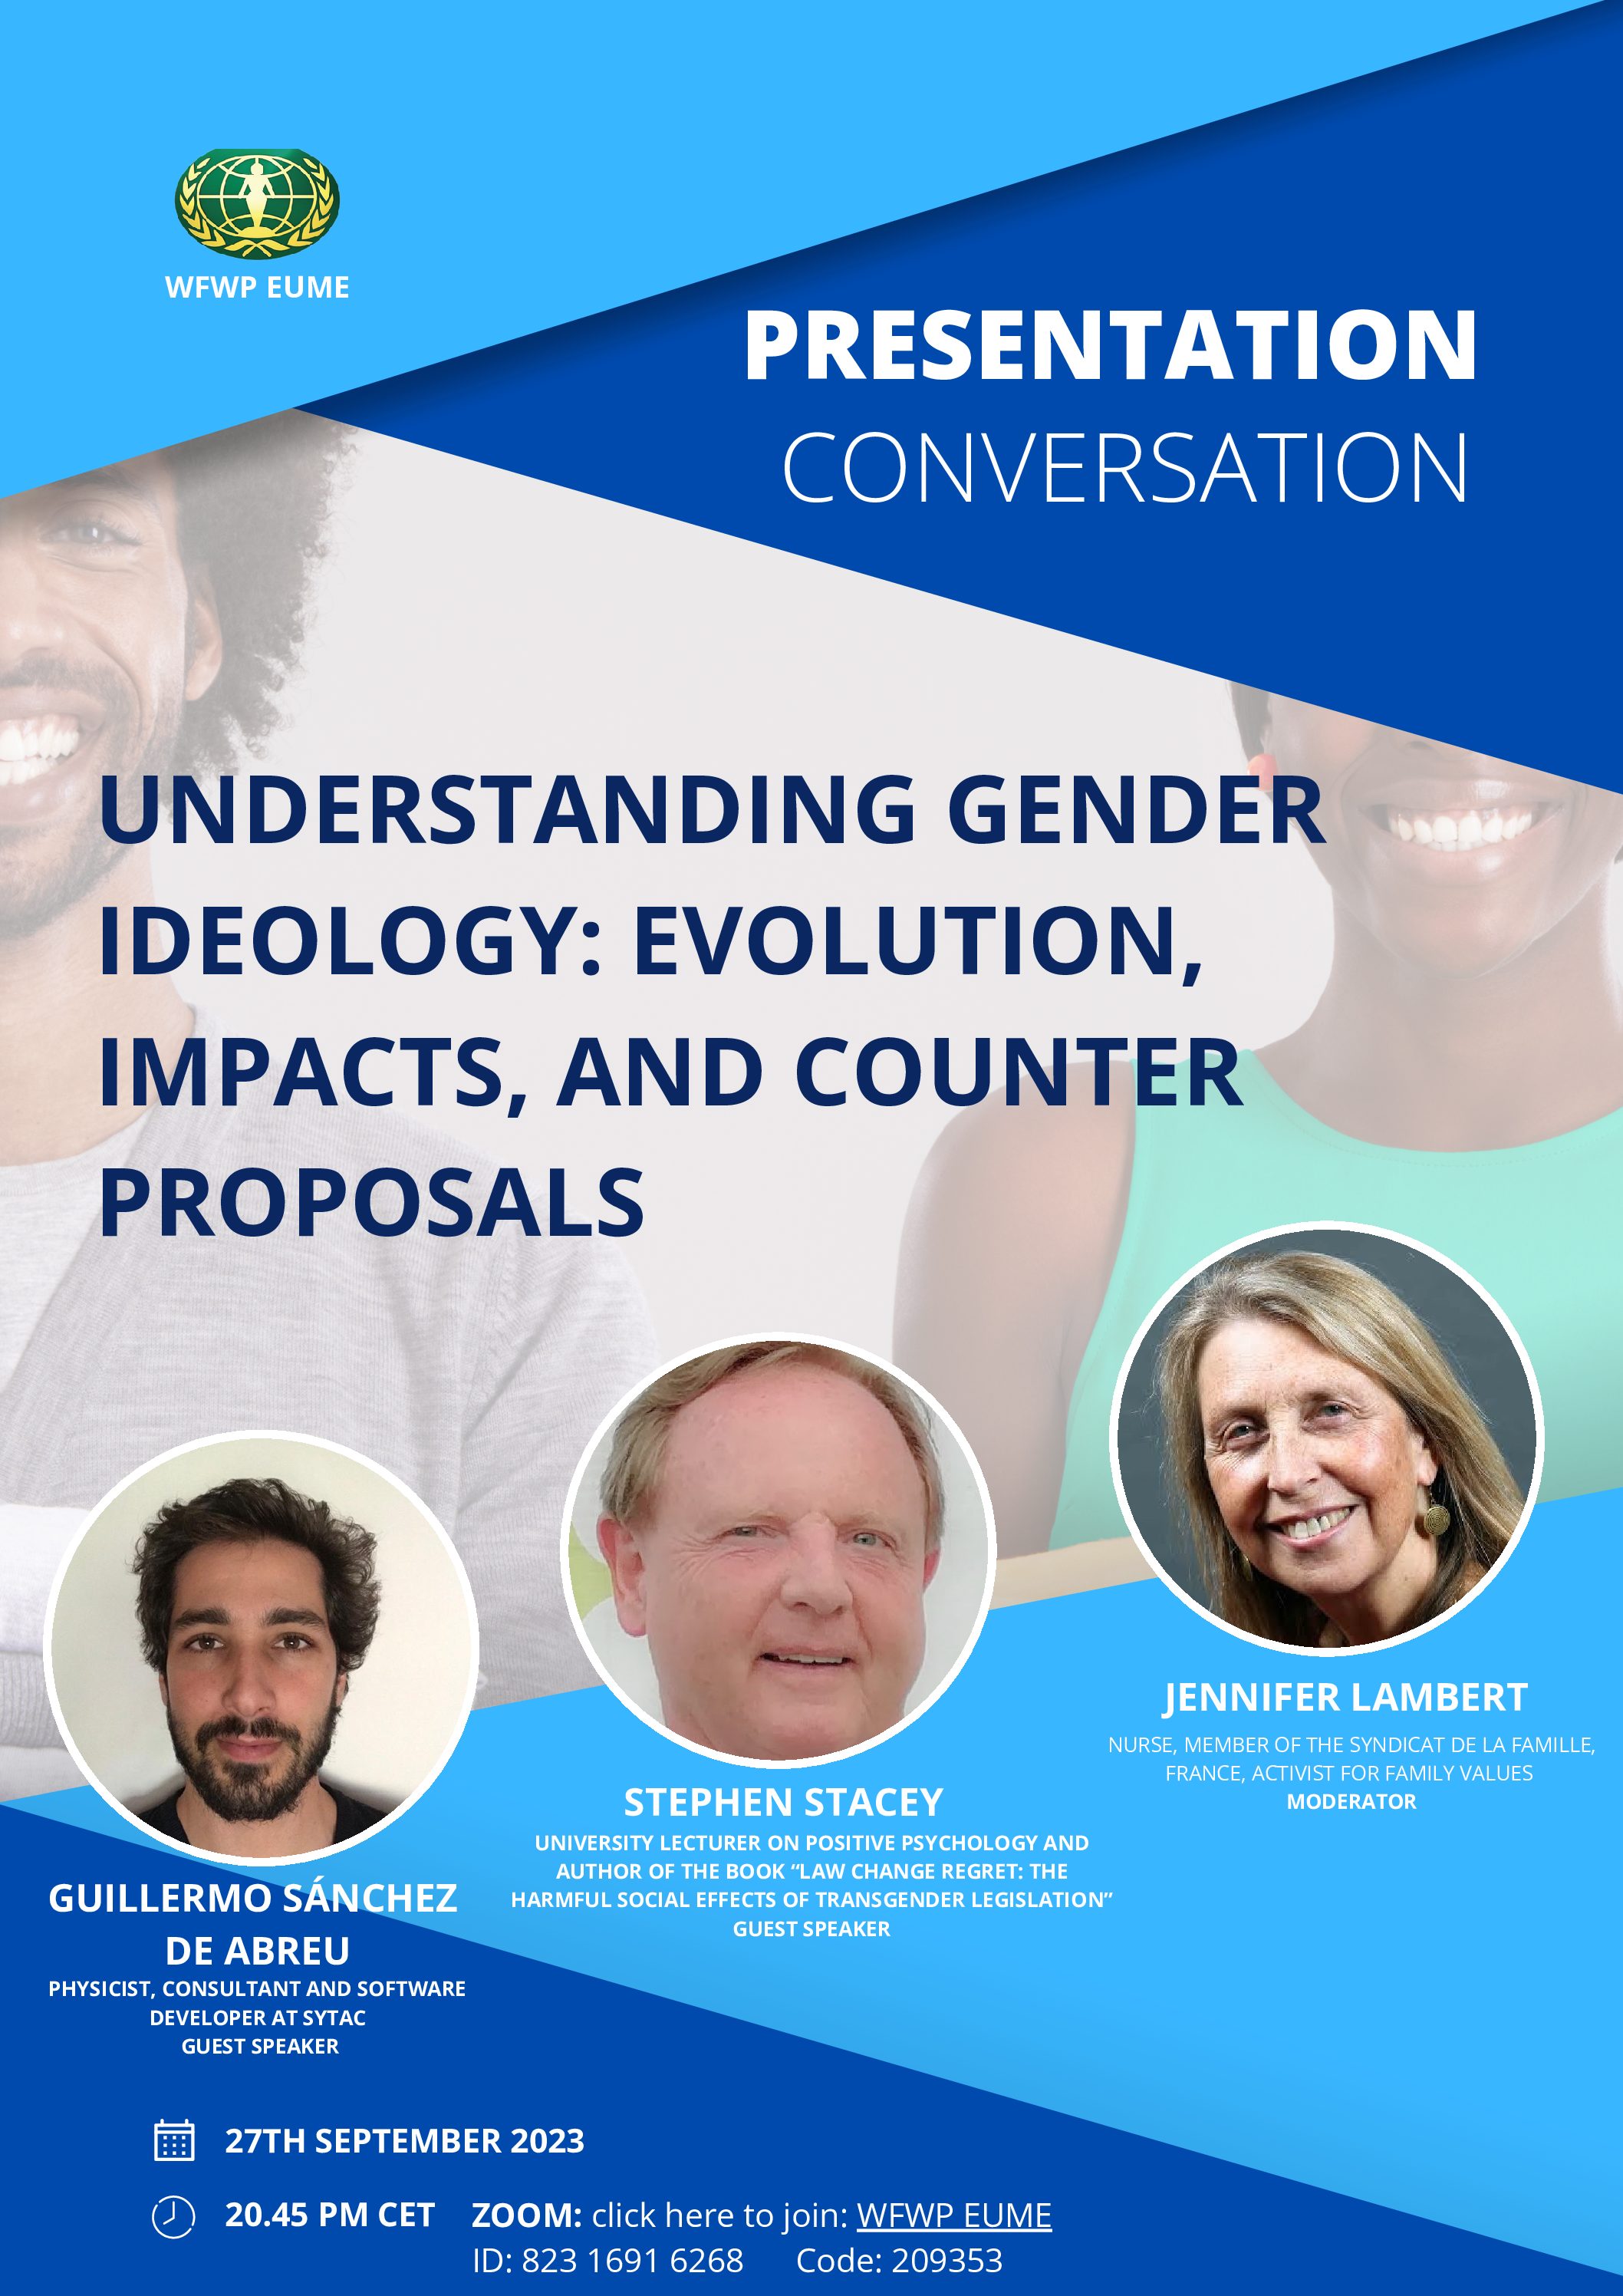 Entendiendo la Ideología de Género: Evolución, Impactos y Contra-Propuestas